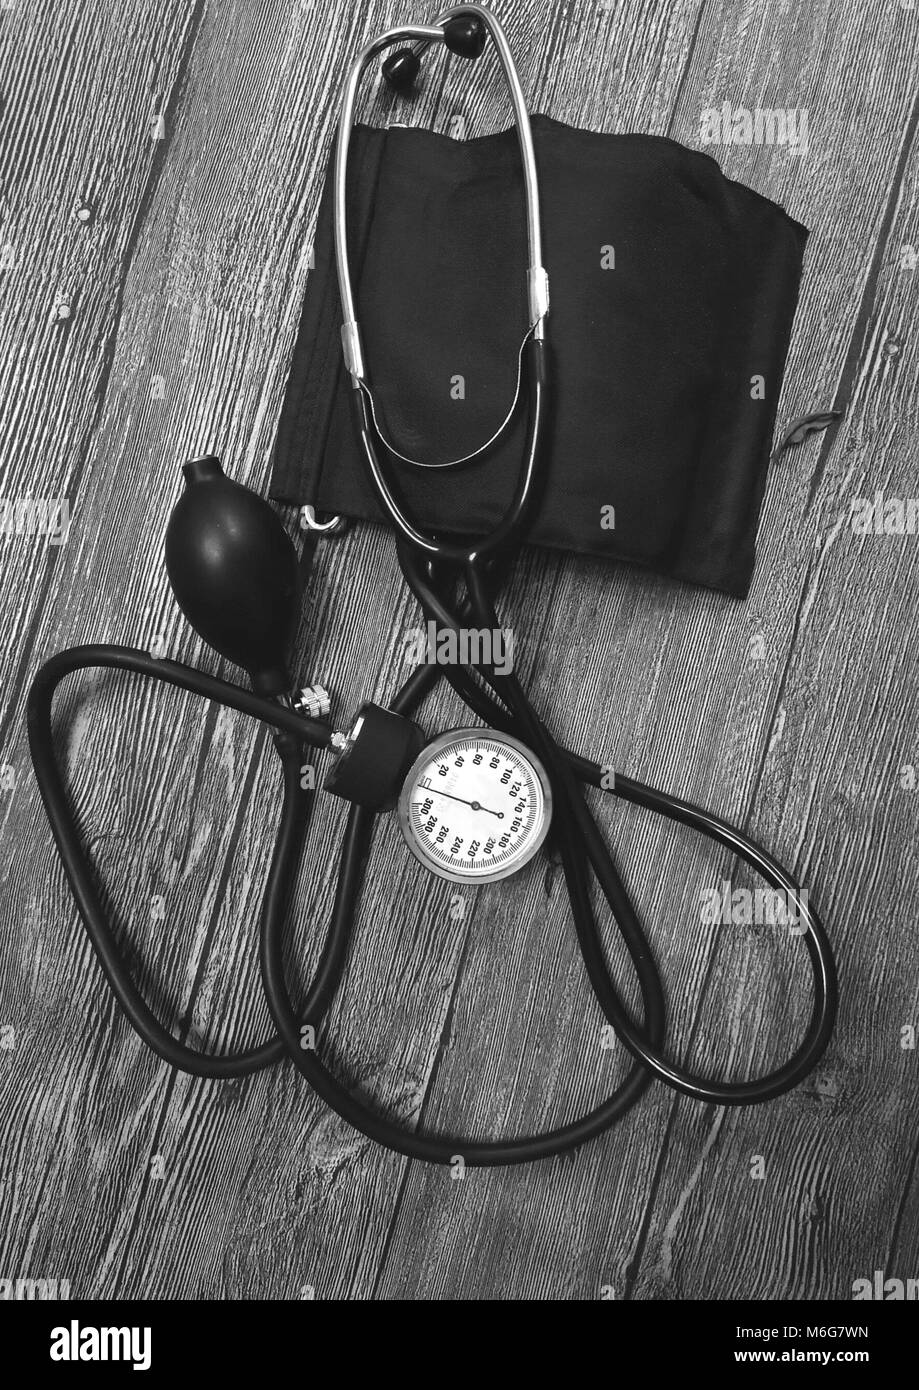 Handgerät zur Messung von Blutdruck auf einem dunklen Hintergrund. Stockfoto